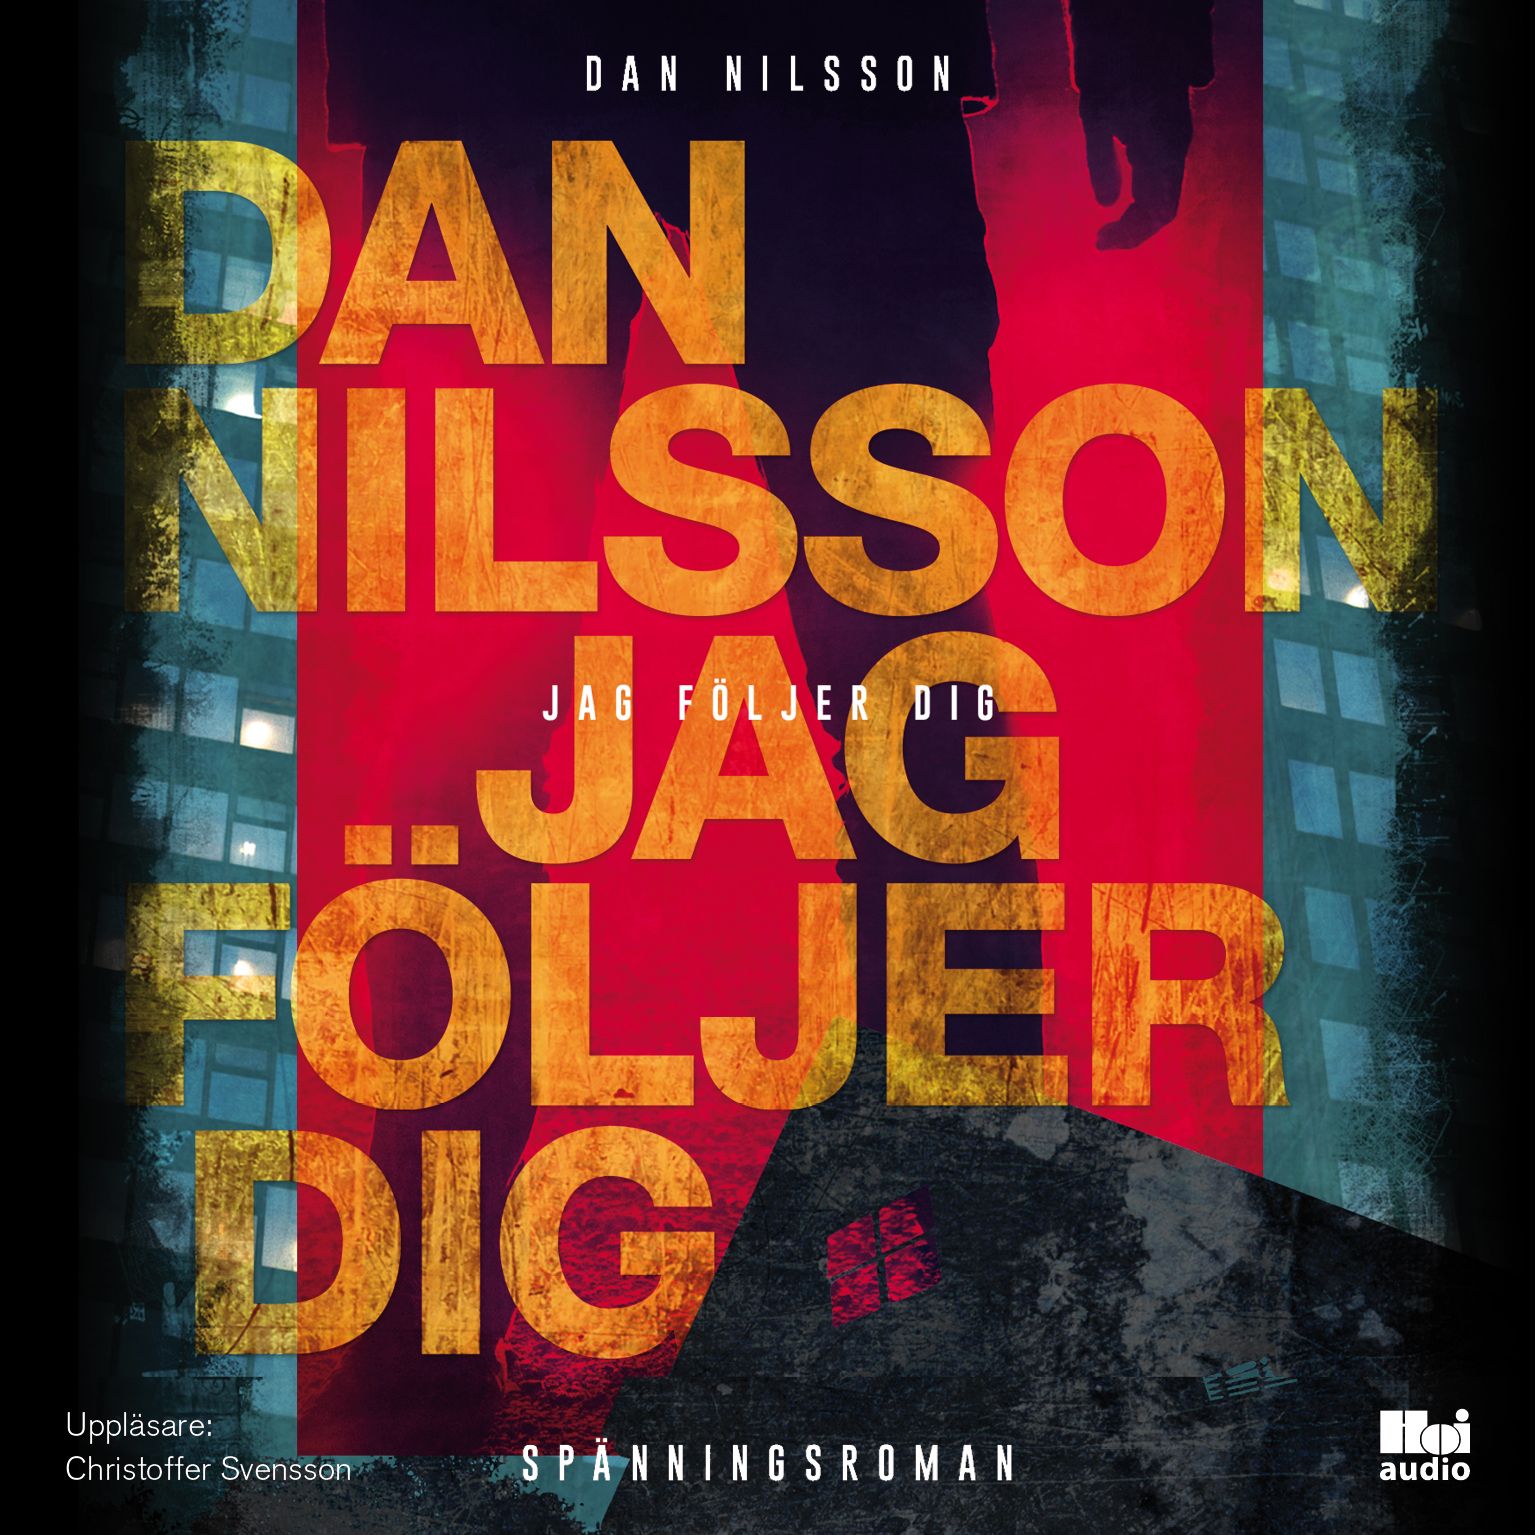 Jag följer dig, audiobook by Dan Nilsson